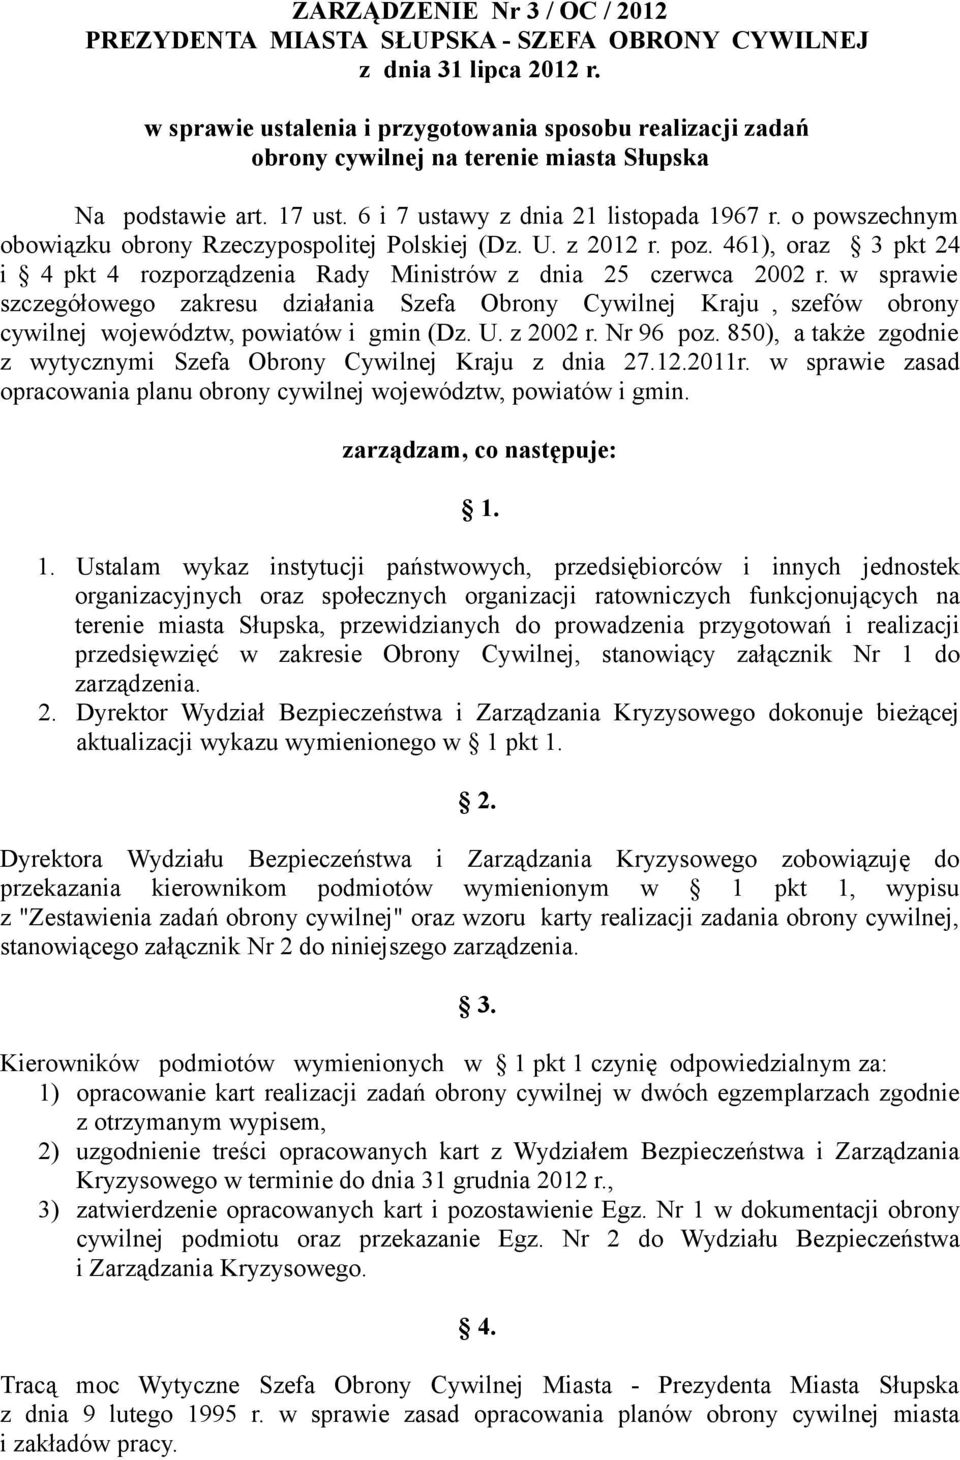 o powszechnym obowiązku obrony Rzeczypospolitej Polskiej (Dz. U. z 2012 r. poz. 461), oraz 3 pkt 24 i 4 pkt 4 rozporządzenia Rady Ministrów z dnia 25 czerwca 2002 r.